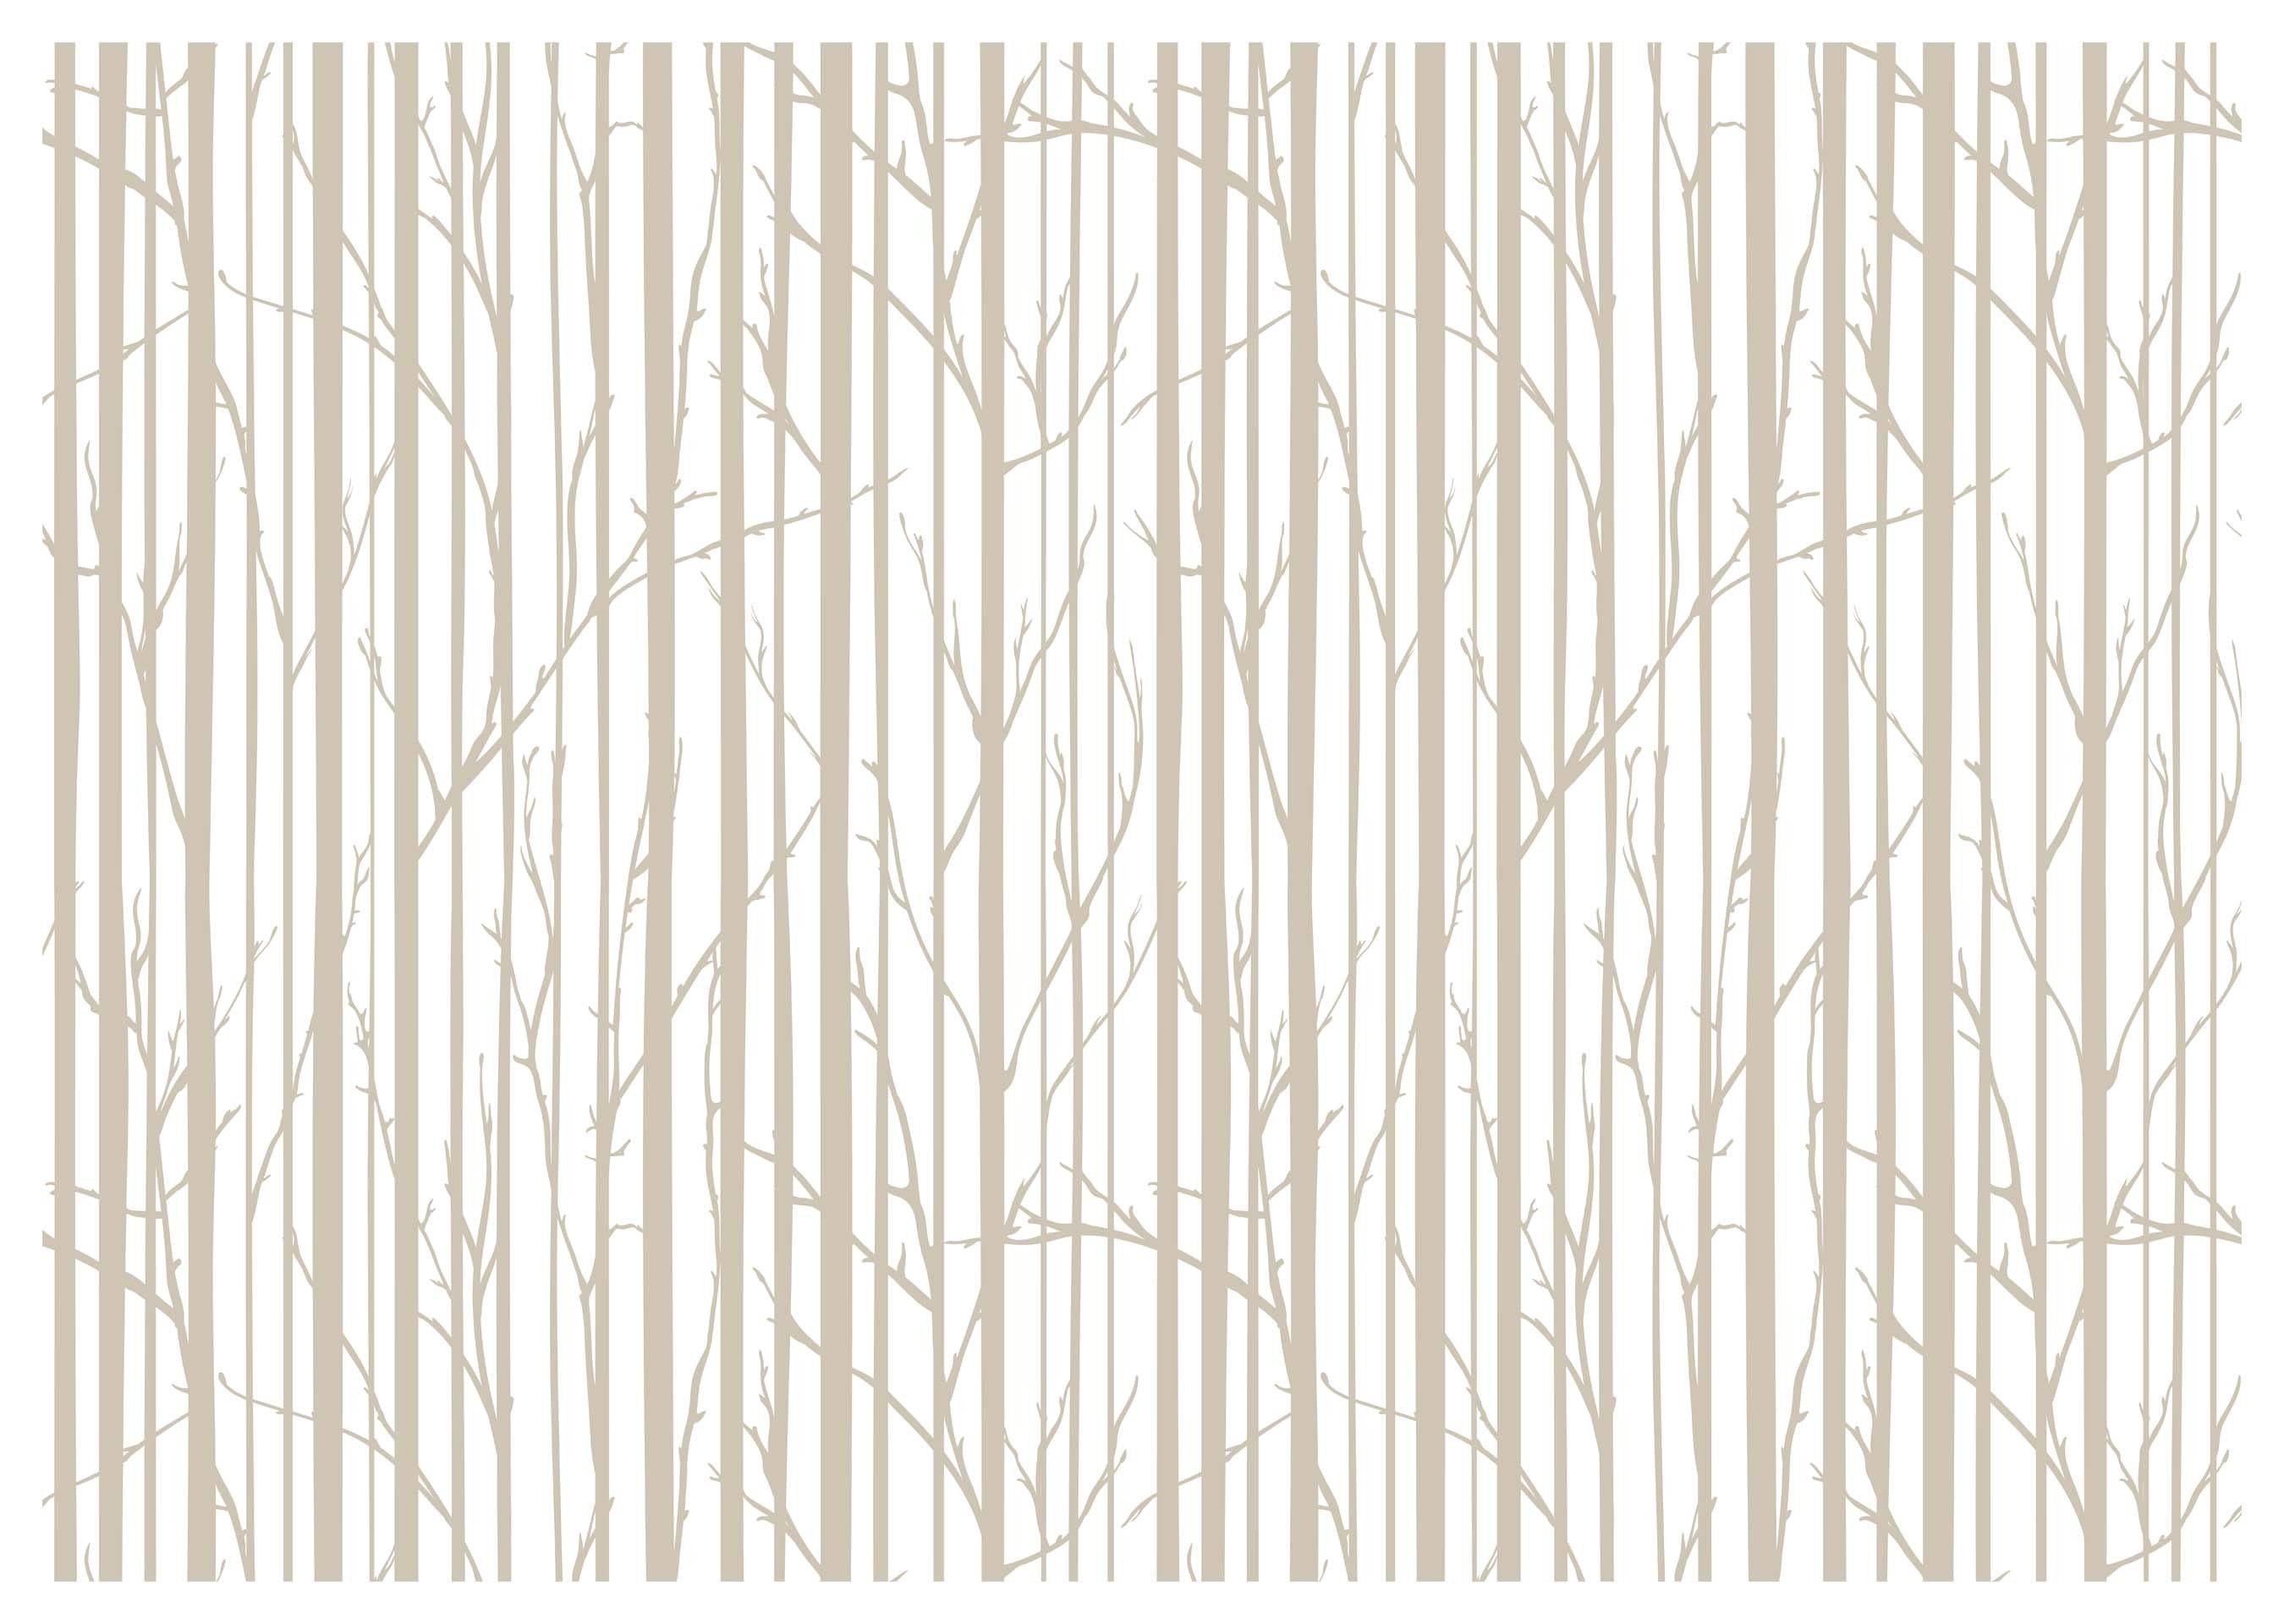 wandmotiv24 Fototapete Bäume Wald minimalistisch, glatt, Wandtapete, Motivtapete, matt, Vliestapete